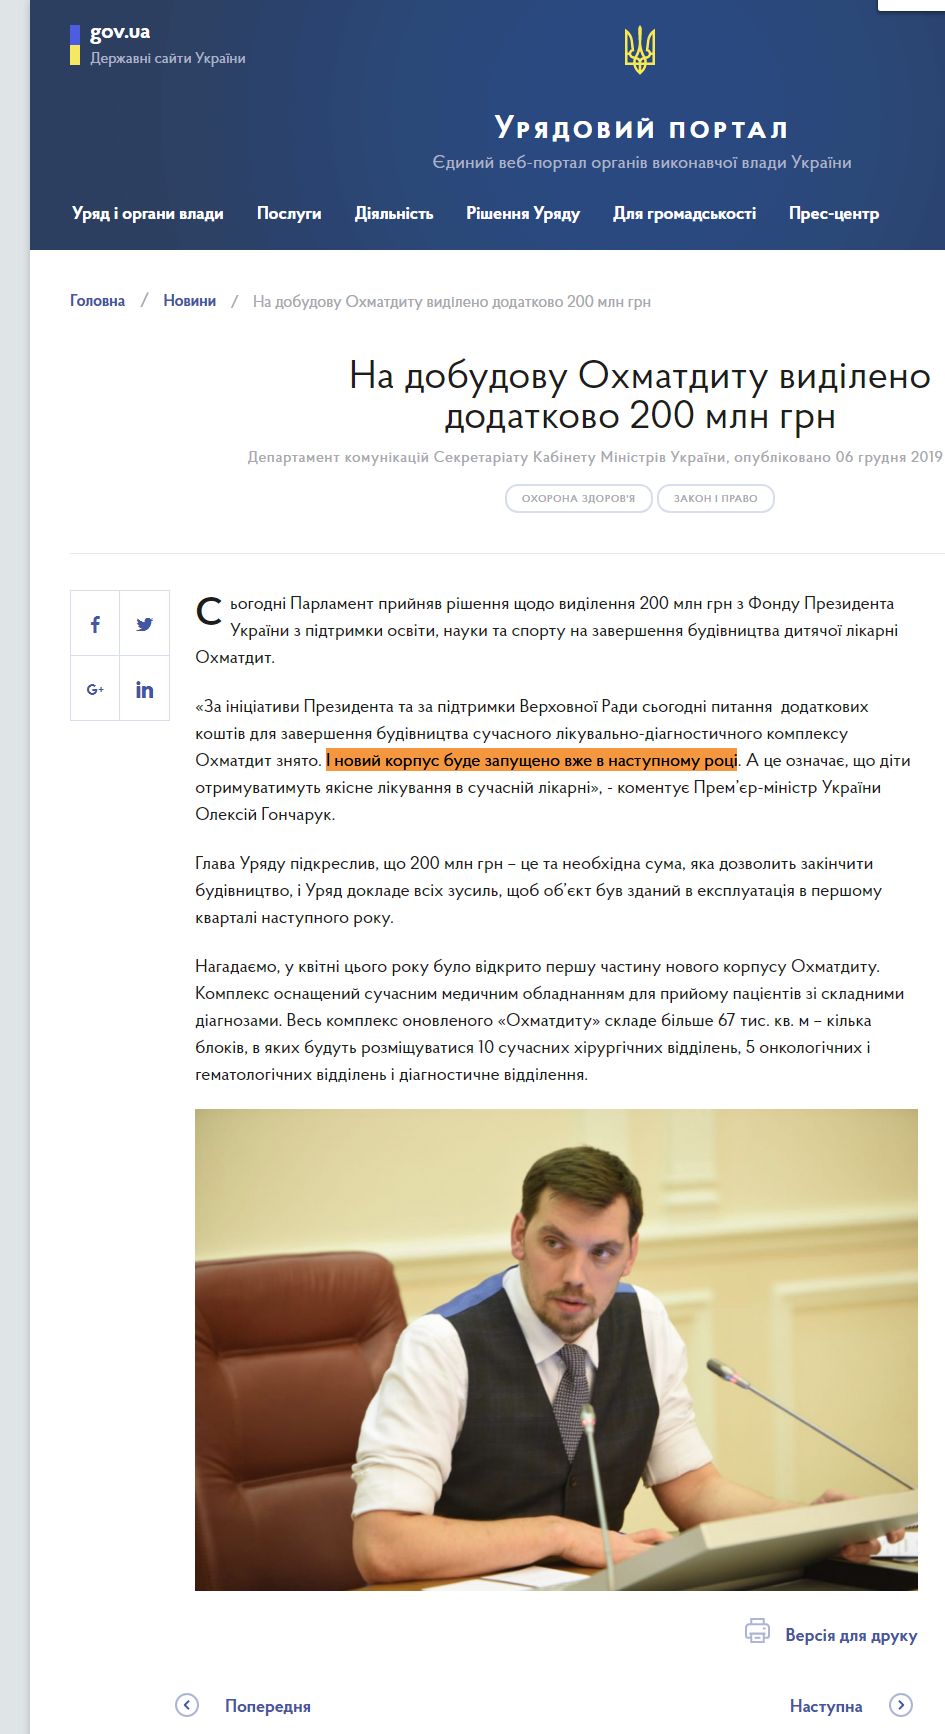 https://www.kmu.gov.ua/news/na-dobudovu-ohmaditu-vidileno-dodatkovo-200-mln-grn